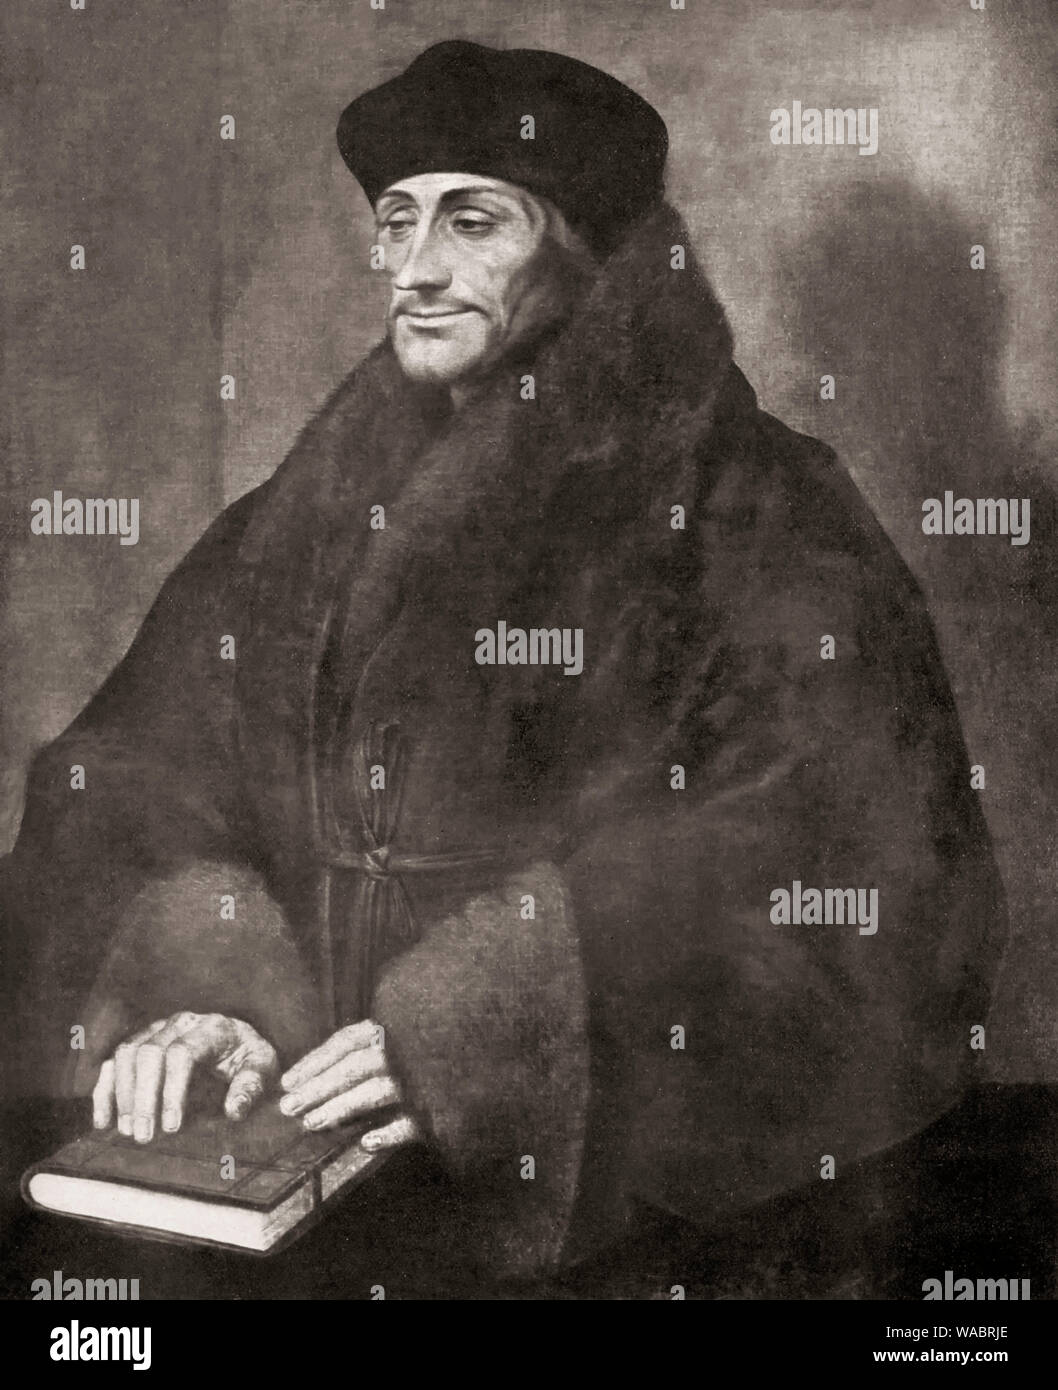 Desiderius Erasmus de Rotterdam, 1465 - 1536, d'un humaniste néerlandais, théologien, philosophe, universitaire et auteur, Banque D'Images